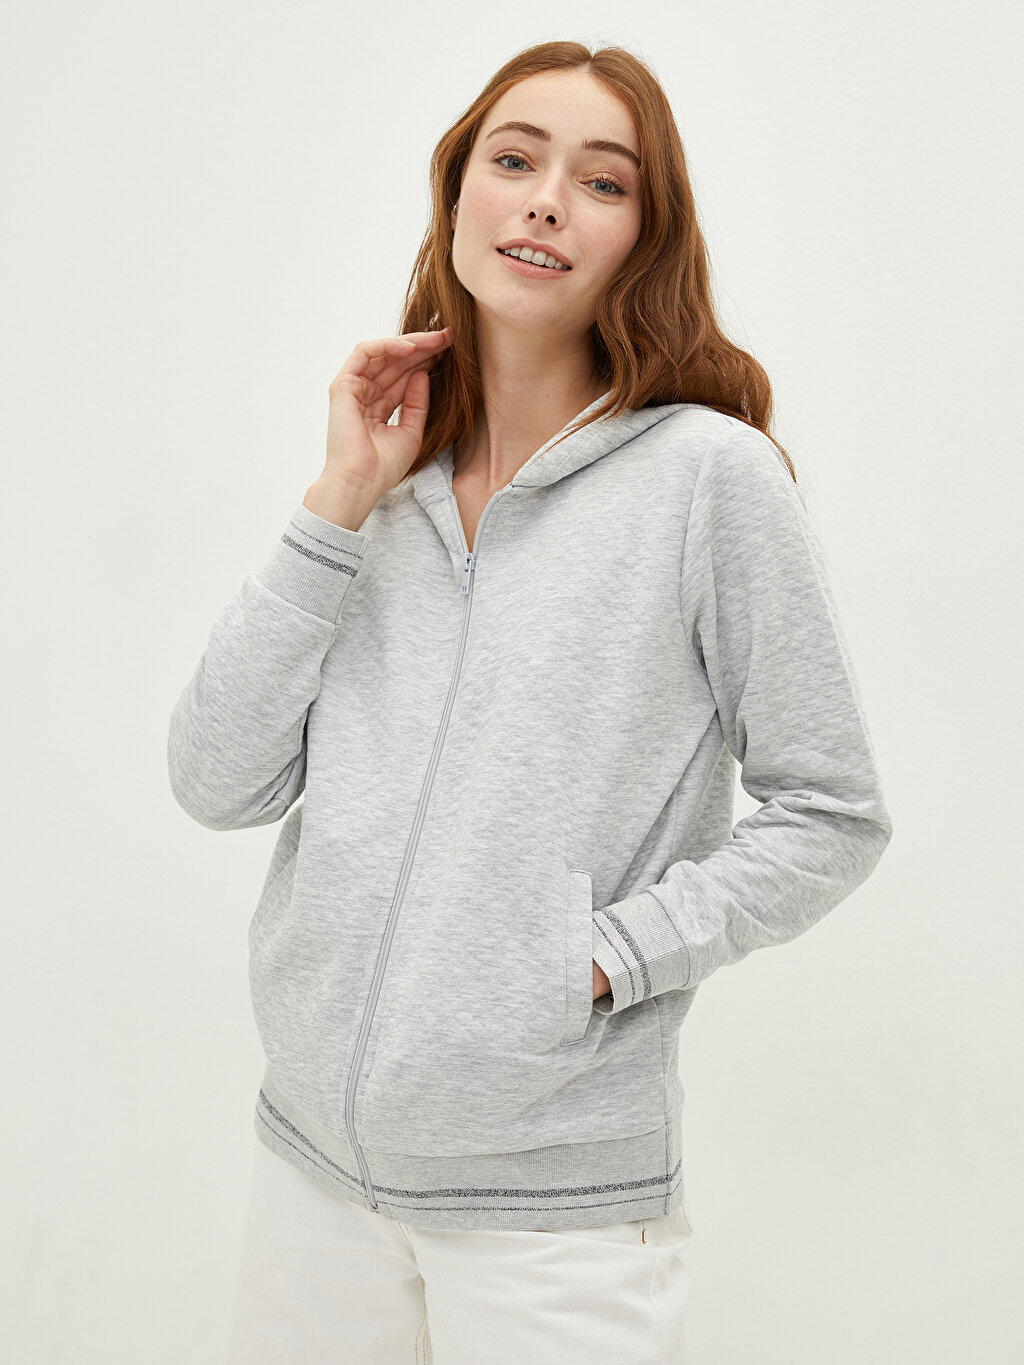 WOMEN FASHION Jumpers & Sweatshirts Hoodless Meisïe sweatshirt Gray S discount 92% 